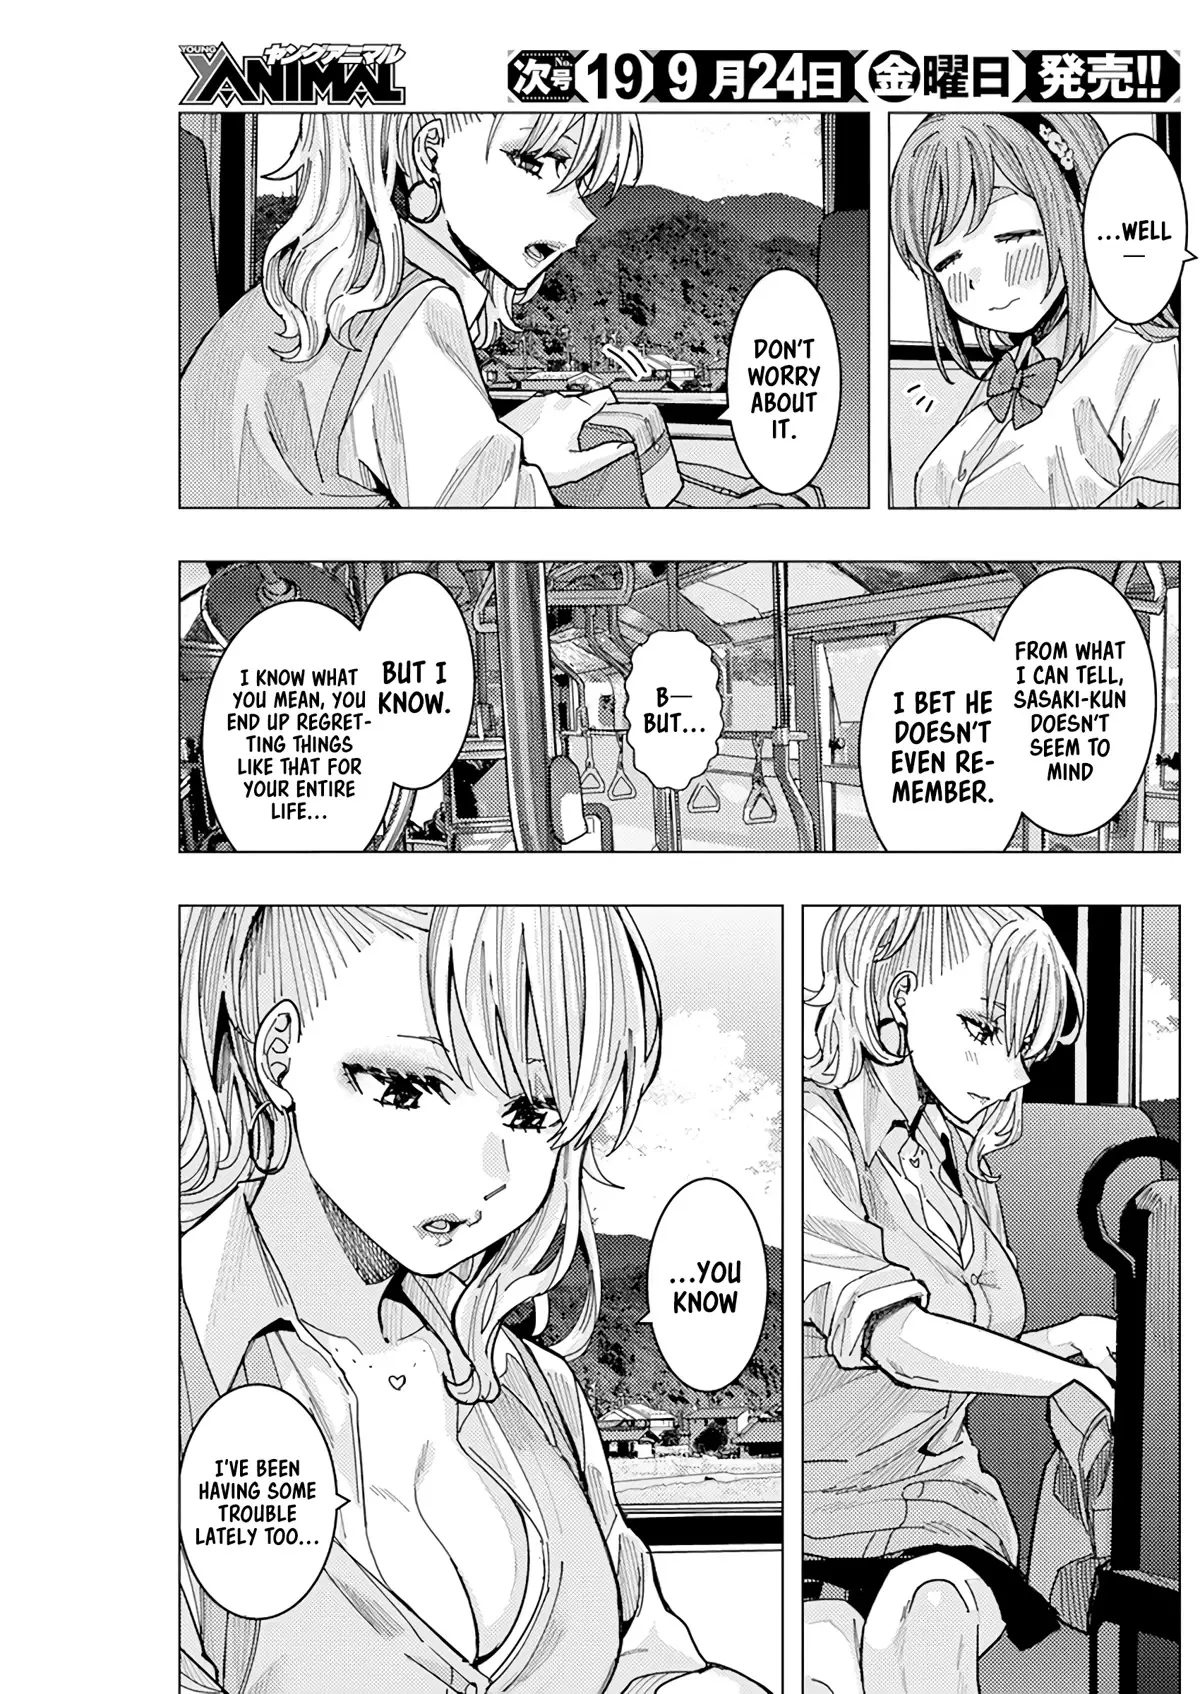 "nobukuni-San" Does She Like Me? - 20 page 6-f33a3c55